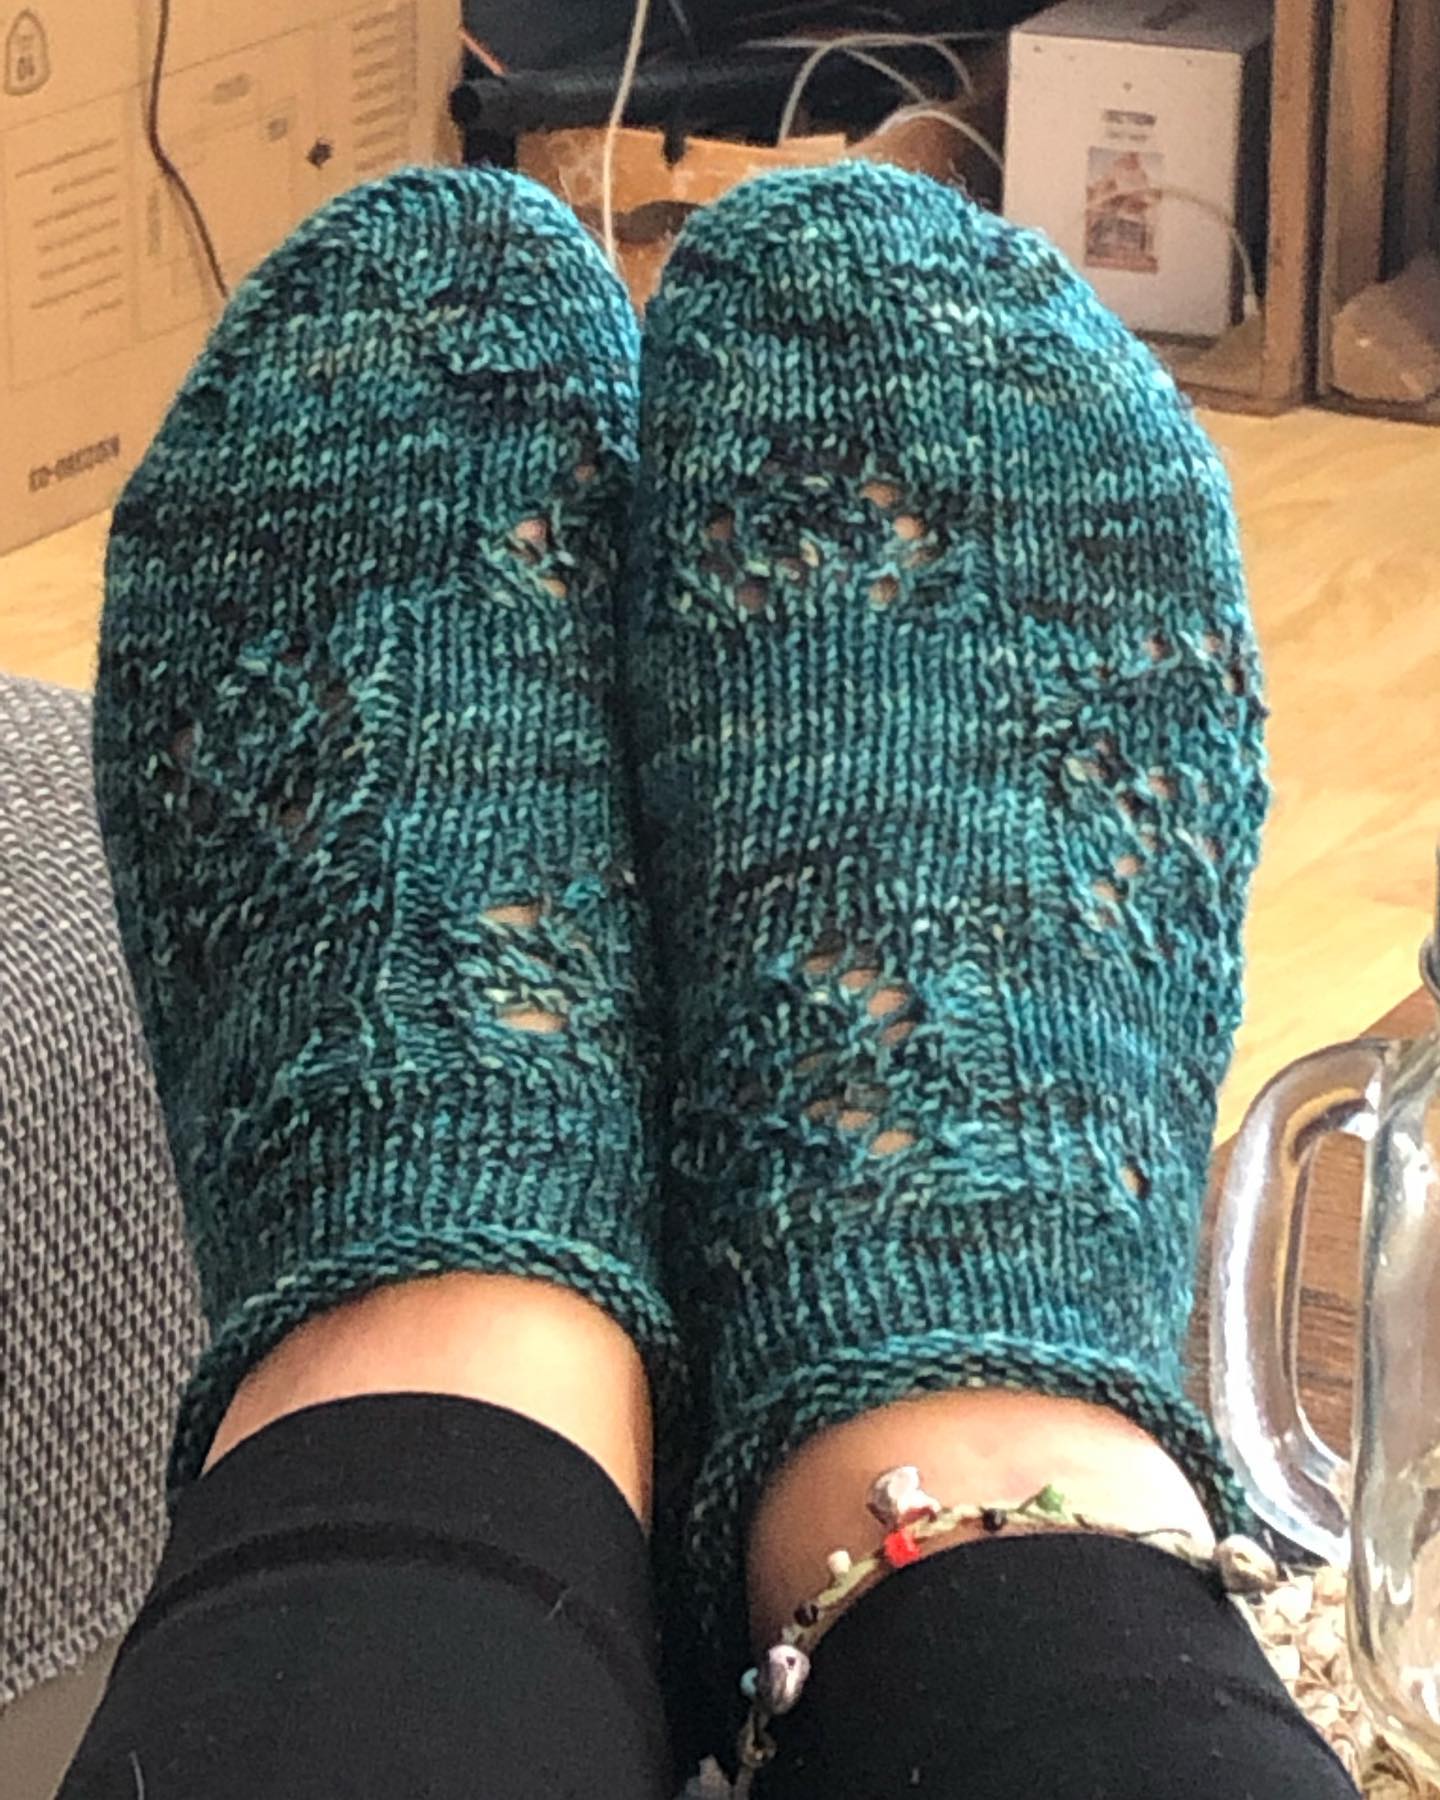 Meine sneaker zum #wolfsockenschafekal sind fertig . Ein einfaches Ajour-Muster dass sich leicht an die wenigen Maschen die brauche anpassen lässt🙃 ich liebe dieses Grün 😍 zum Glück ist genug wolle da für ein weiteres Paar 
#knitting #knittingsocks #knittingsocksoninstagram #socken ##aprilvent #strickenistwiezaubernkönnen #strickenistmeinyoga #stricken #strickenmachtglücklich #menden #sauerland #green #sneaker #ajour #sommertime #füße